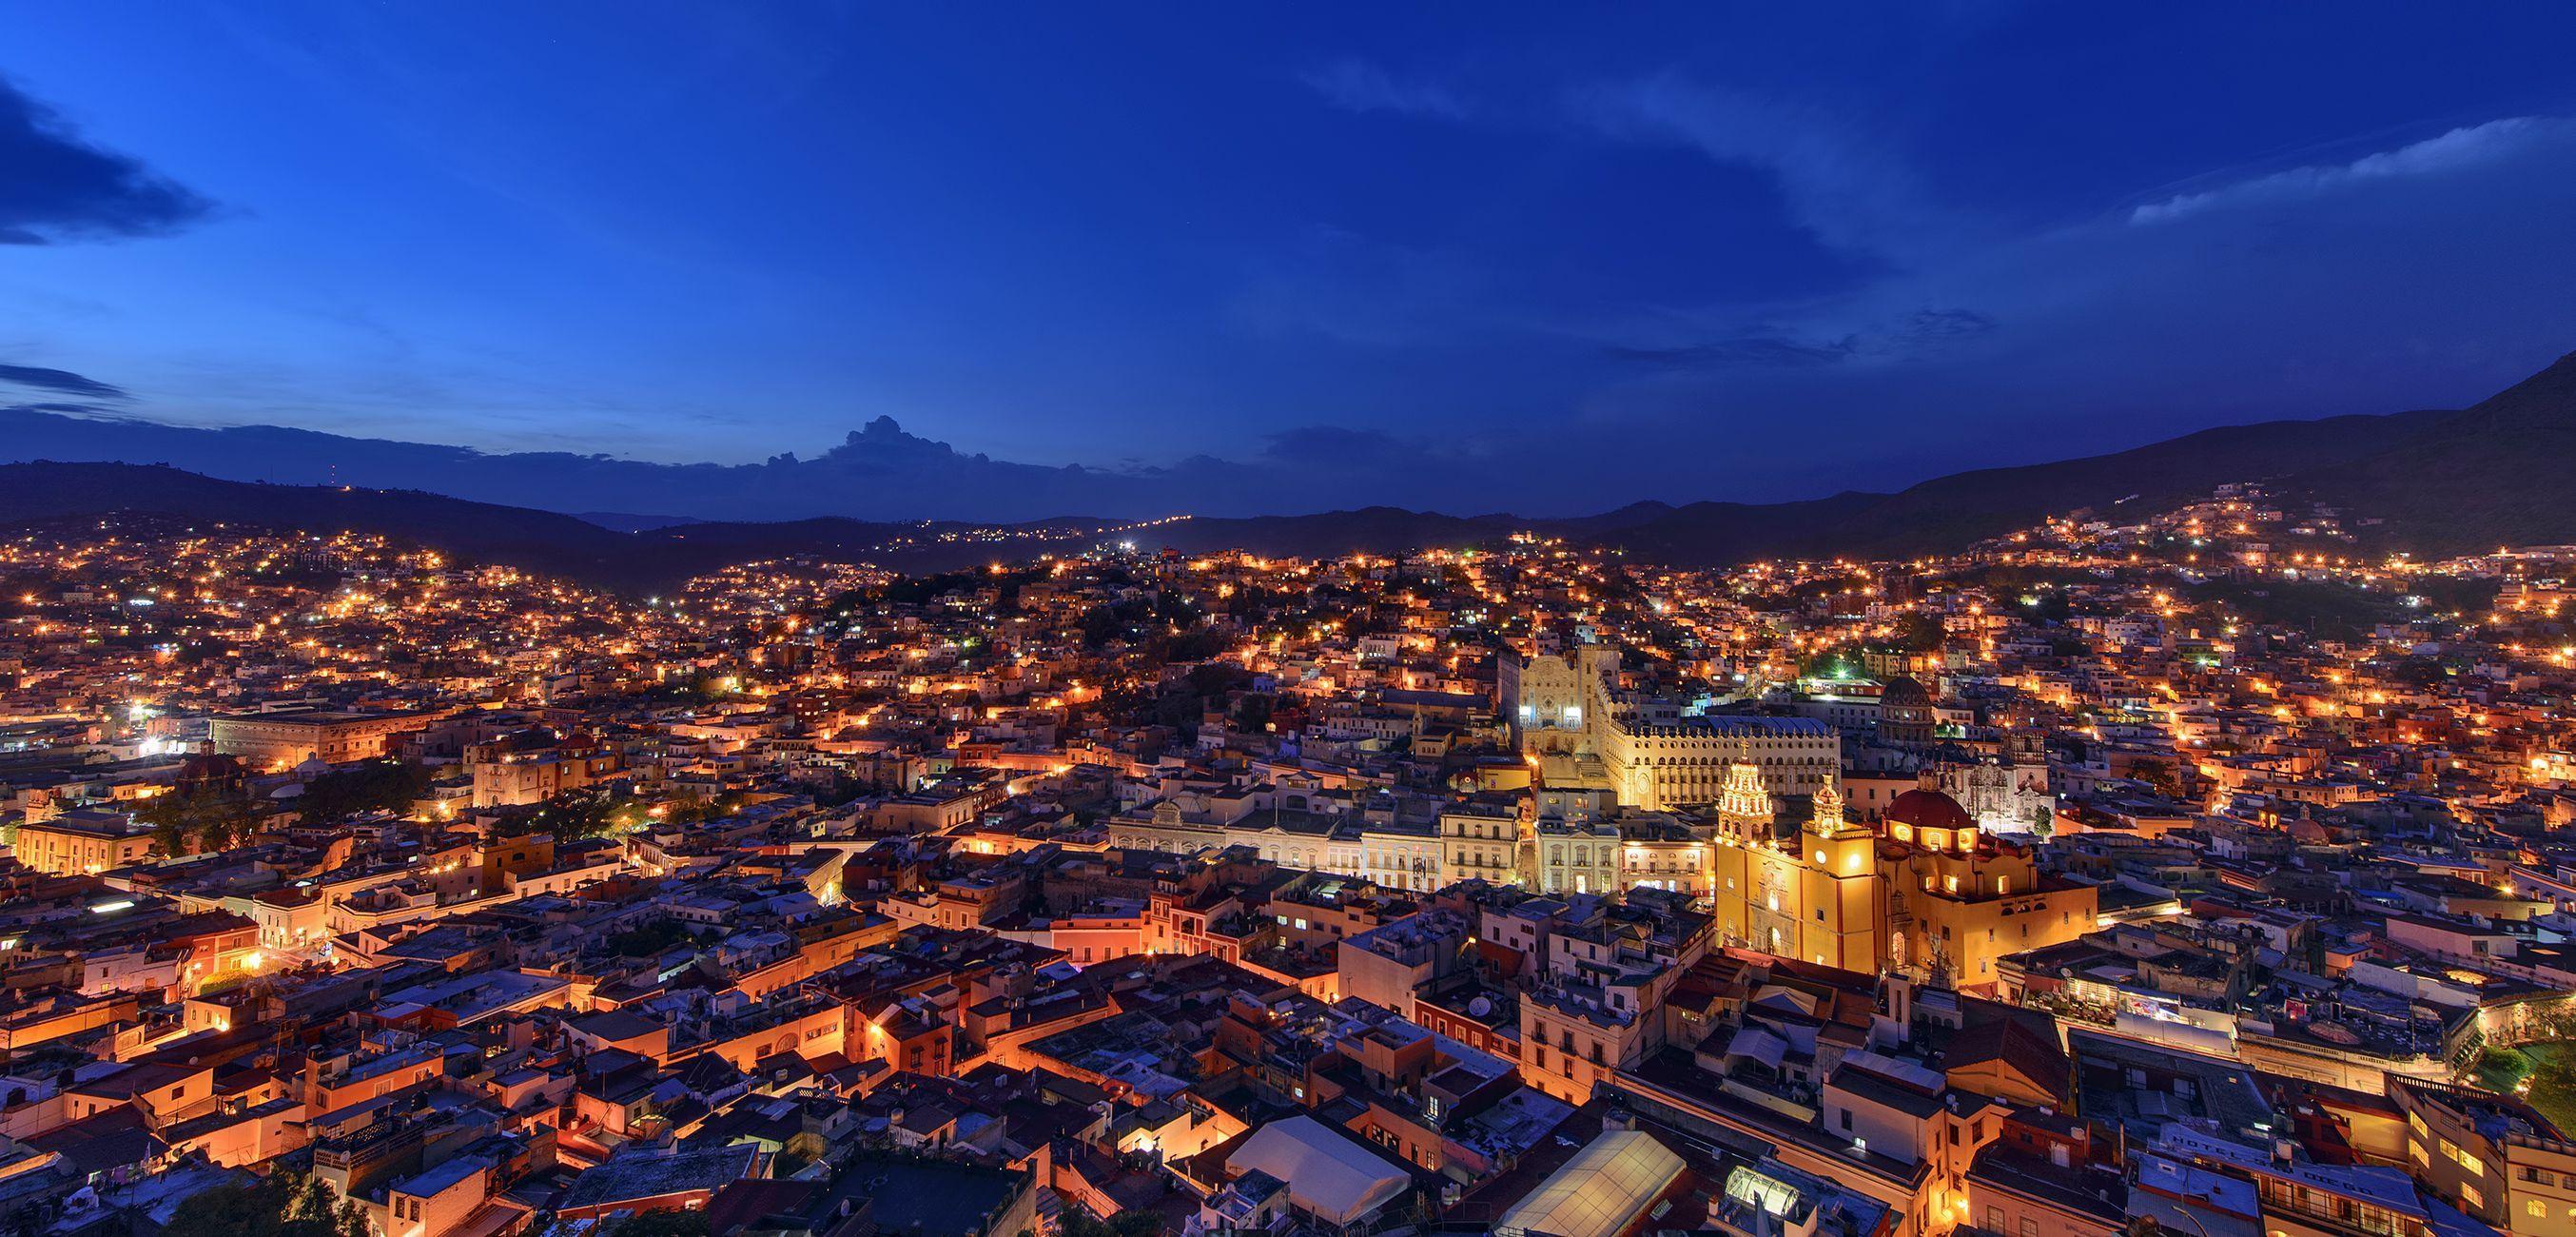 Guanajuato Wallpaper Image Photo Picture Background